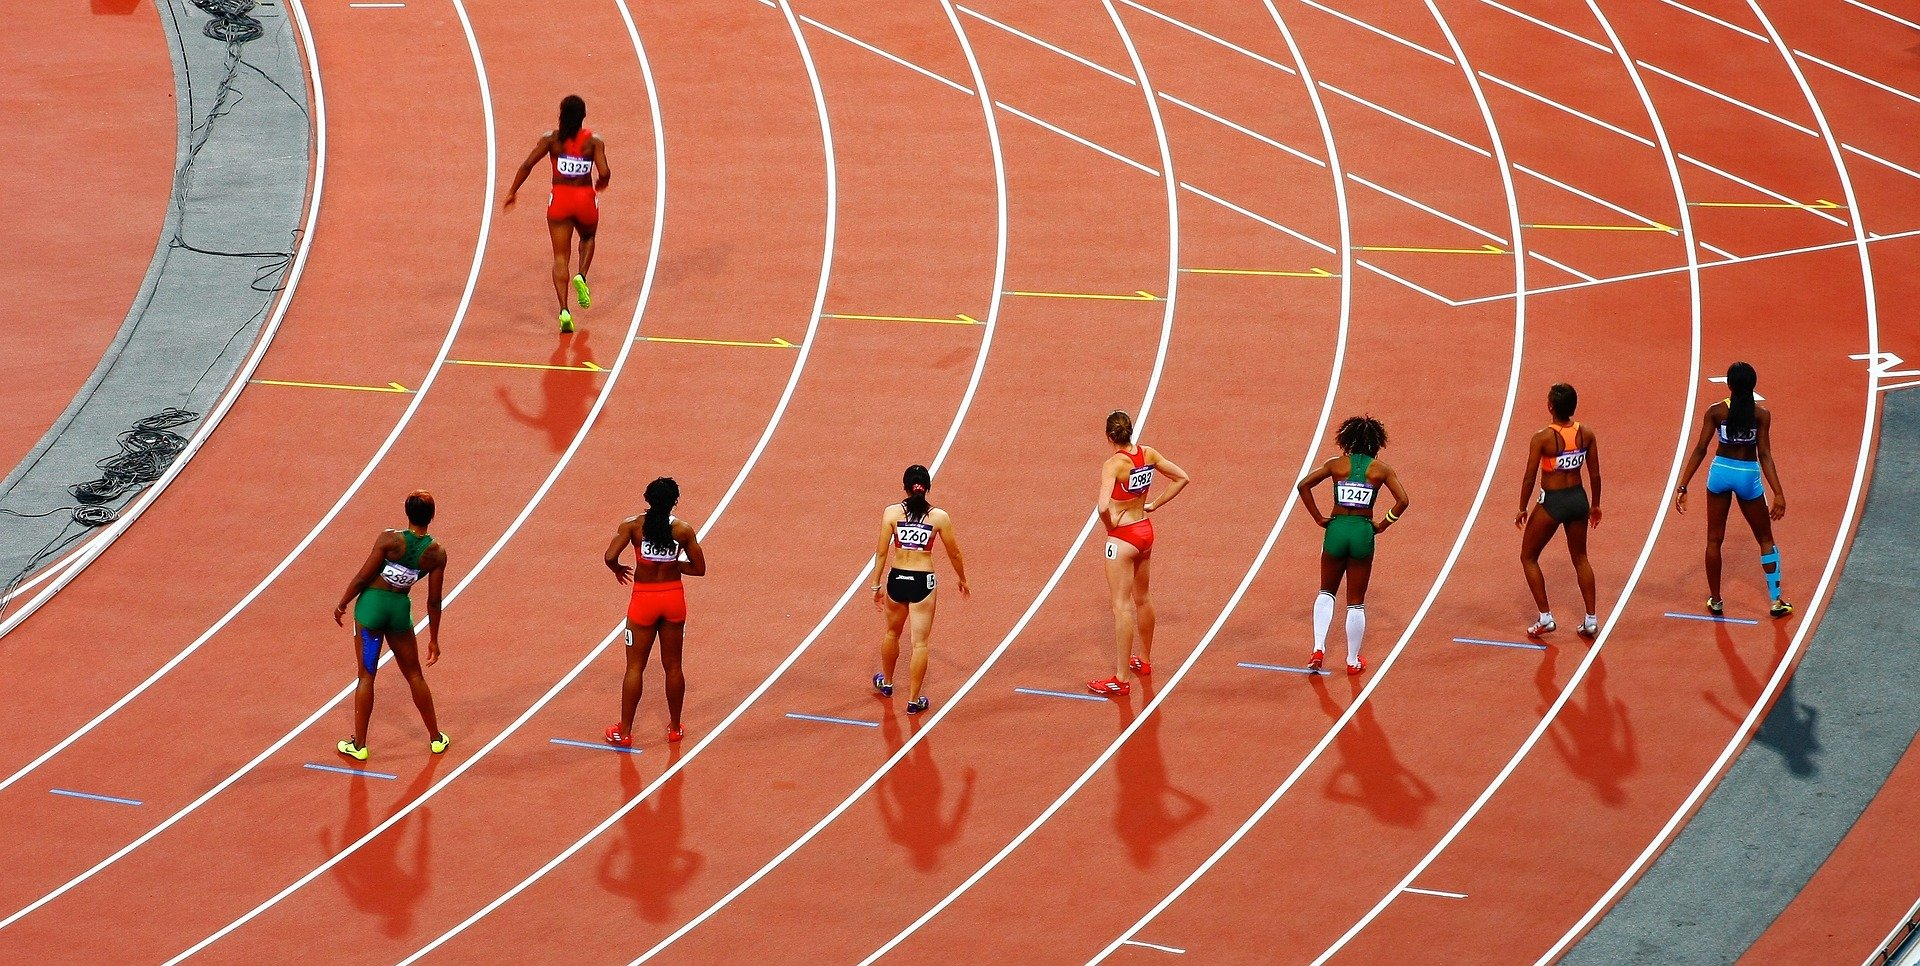 La participación de la mujer en el deporte es un indicador del desarrollo igualitario en el mundo, según un estudio de la UMU